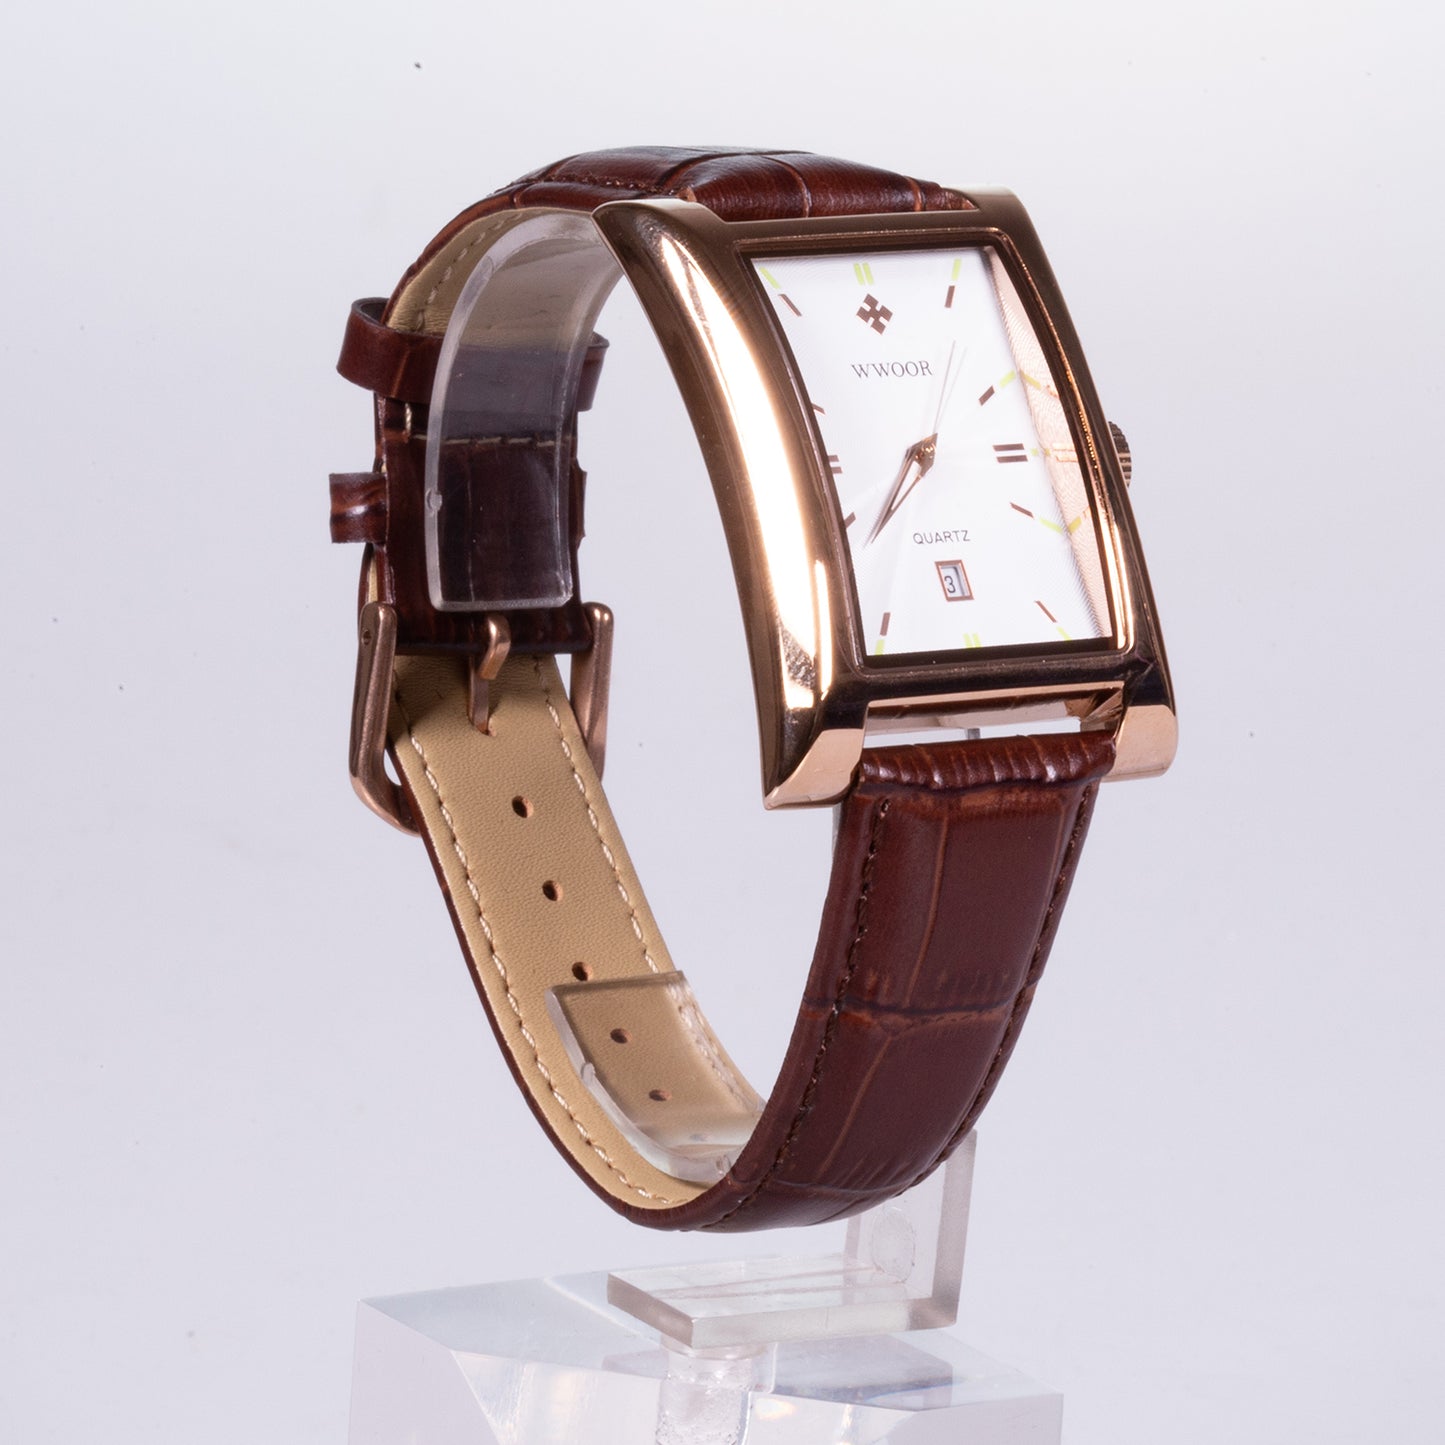 Reloj de Acero inoxidable, correa marrón de cuero genuino y con caja de color dorado.